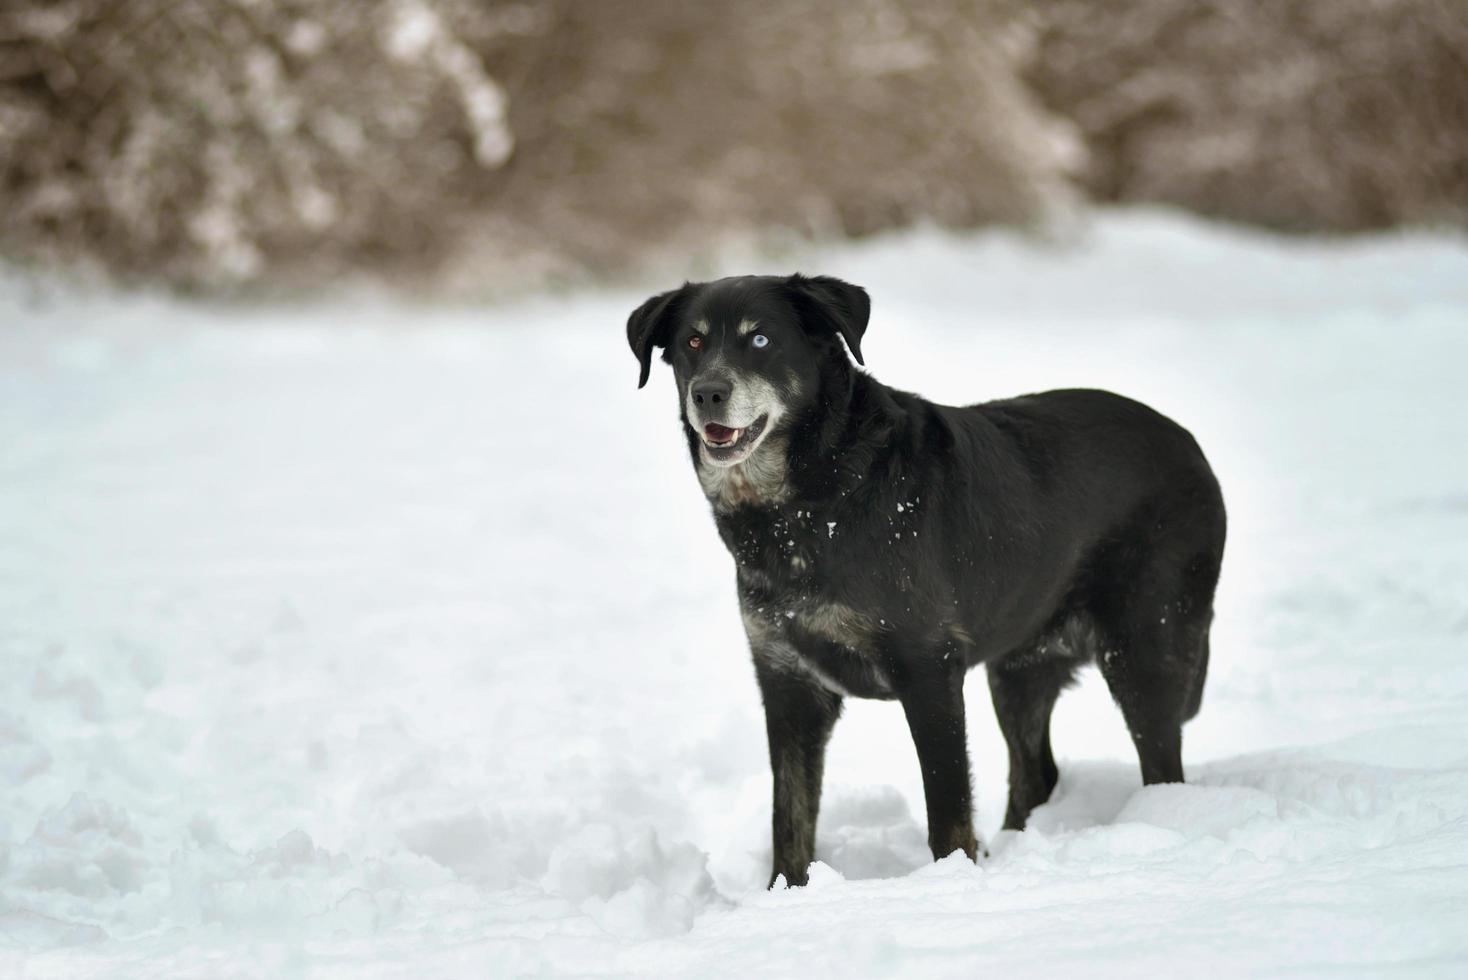 retrato de um cão labrador preto fofo na neve fresca branca foto